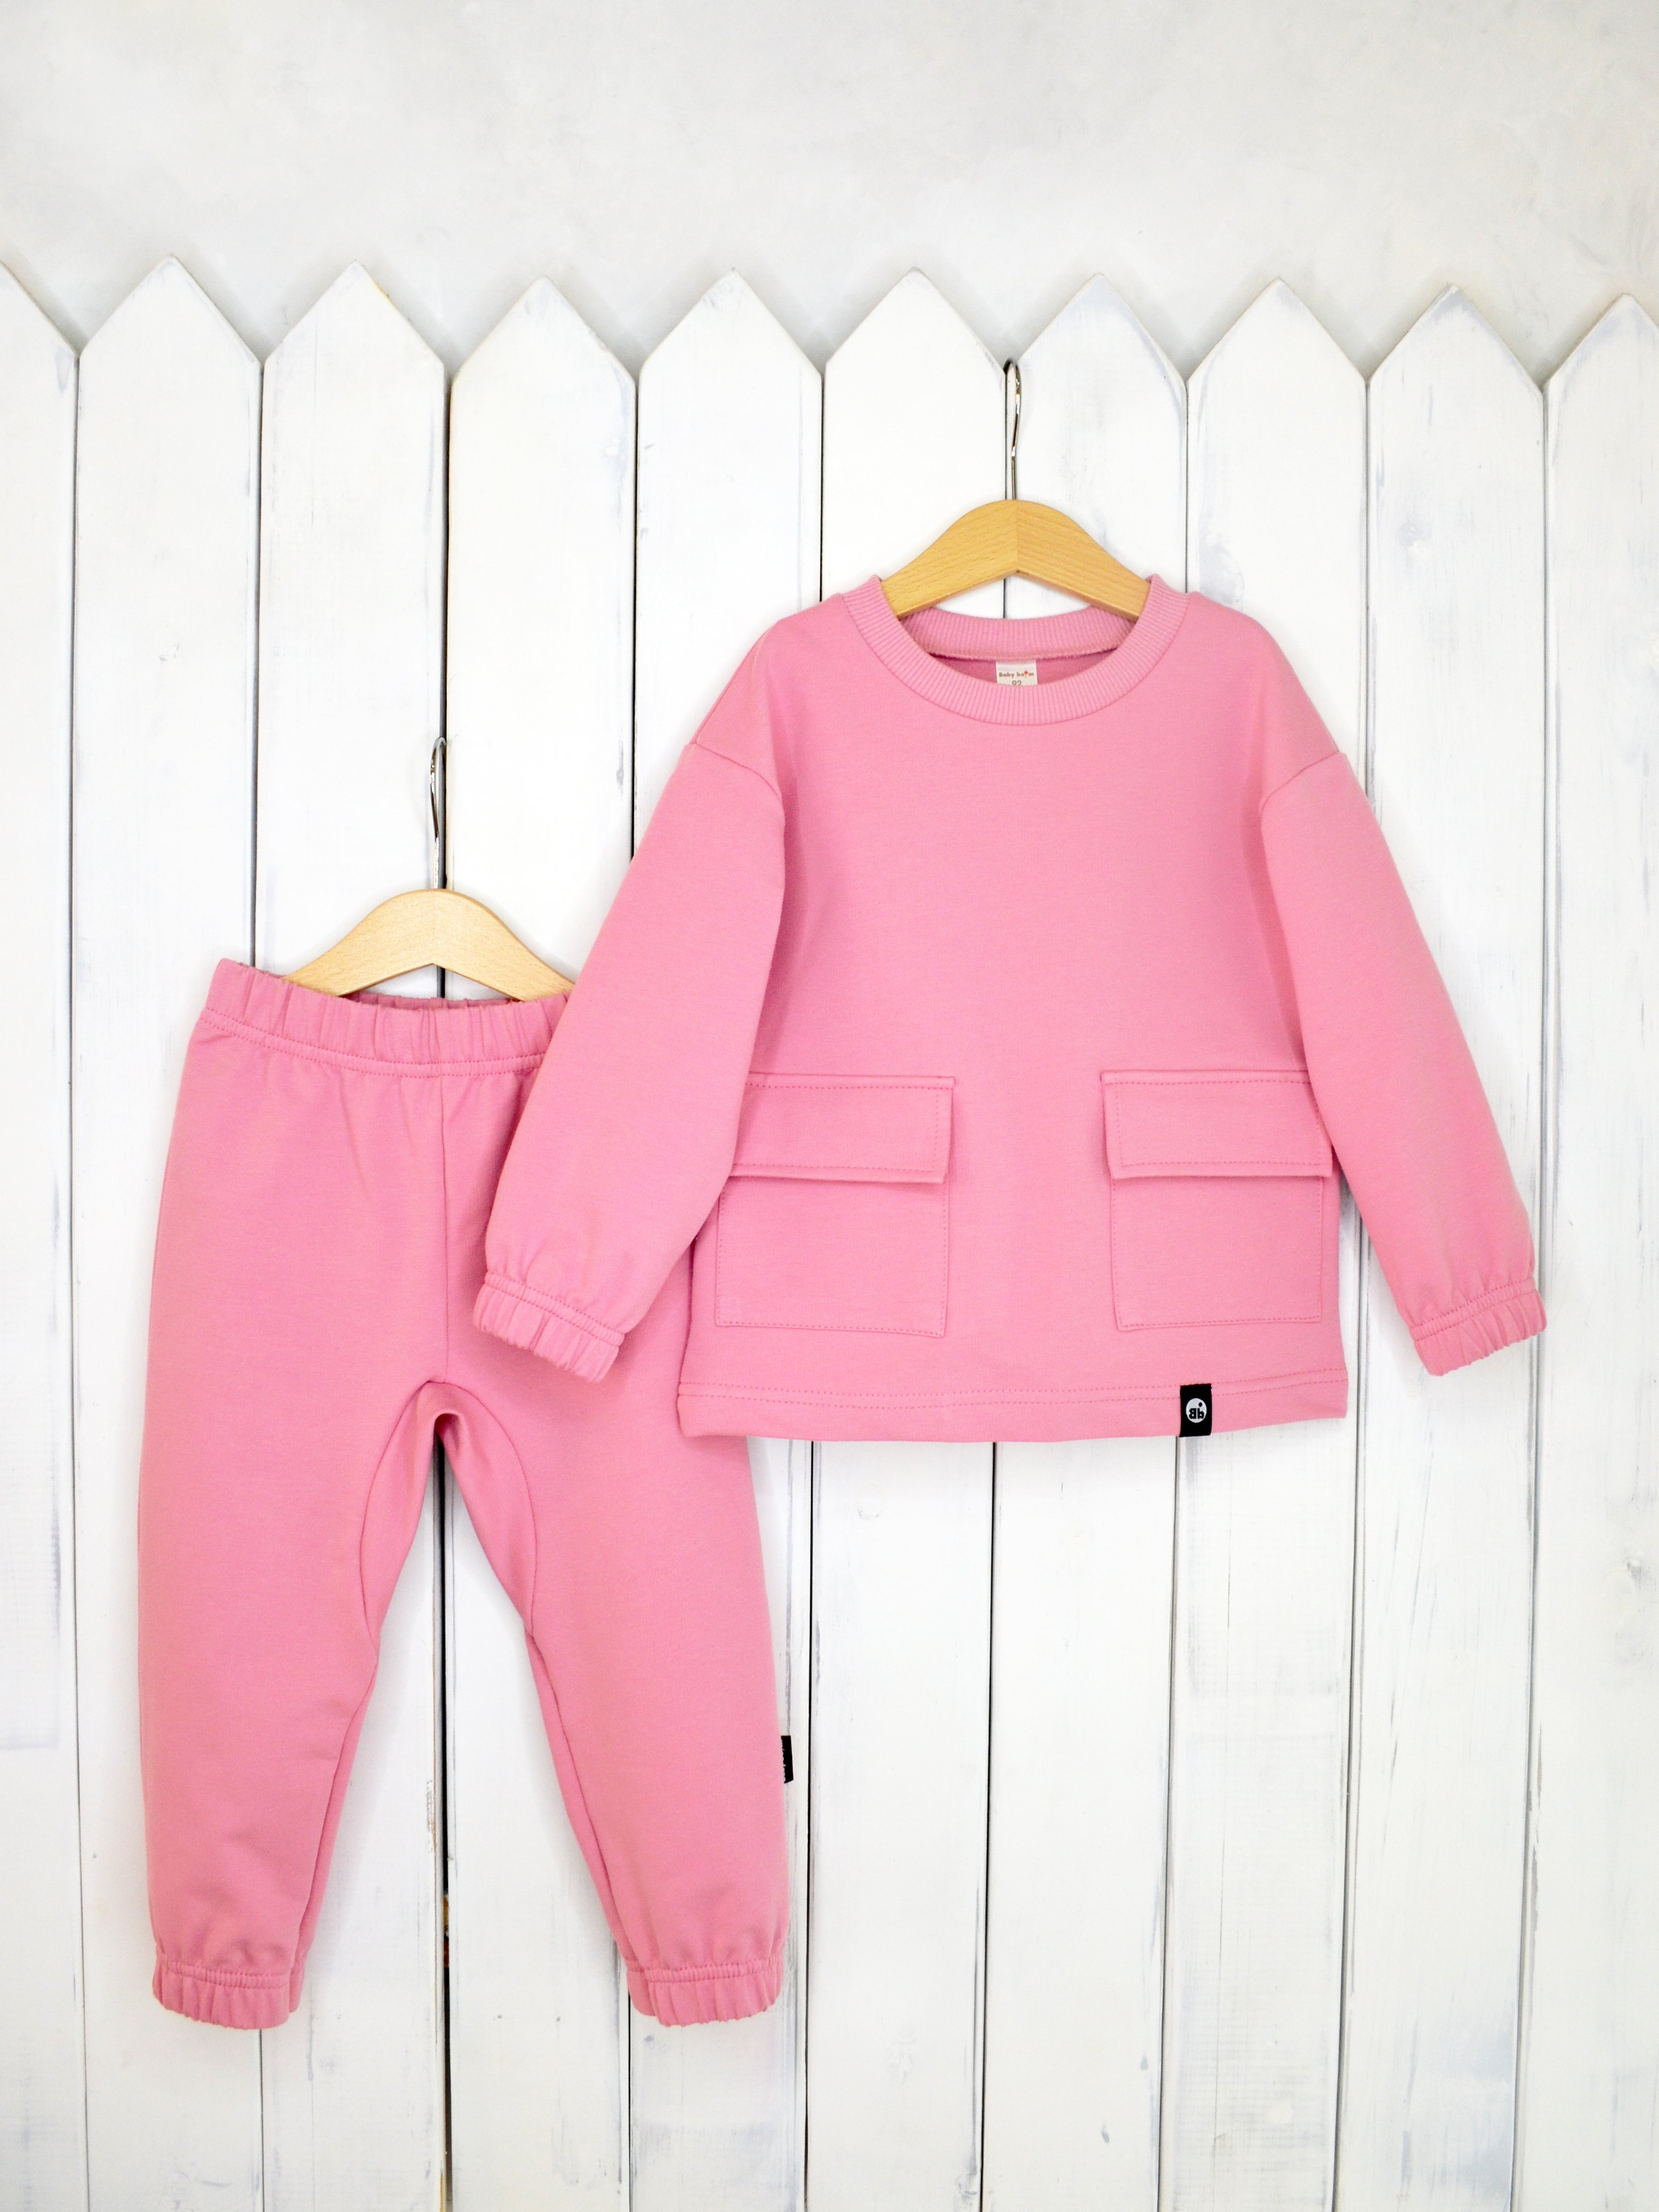 КД326/3-Ф Комплект детский джемпер+брюки цвет: розовый зефир р.98 Бэби Бум - Йошкар-Ола 